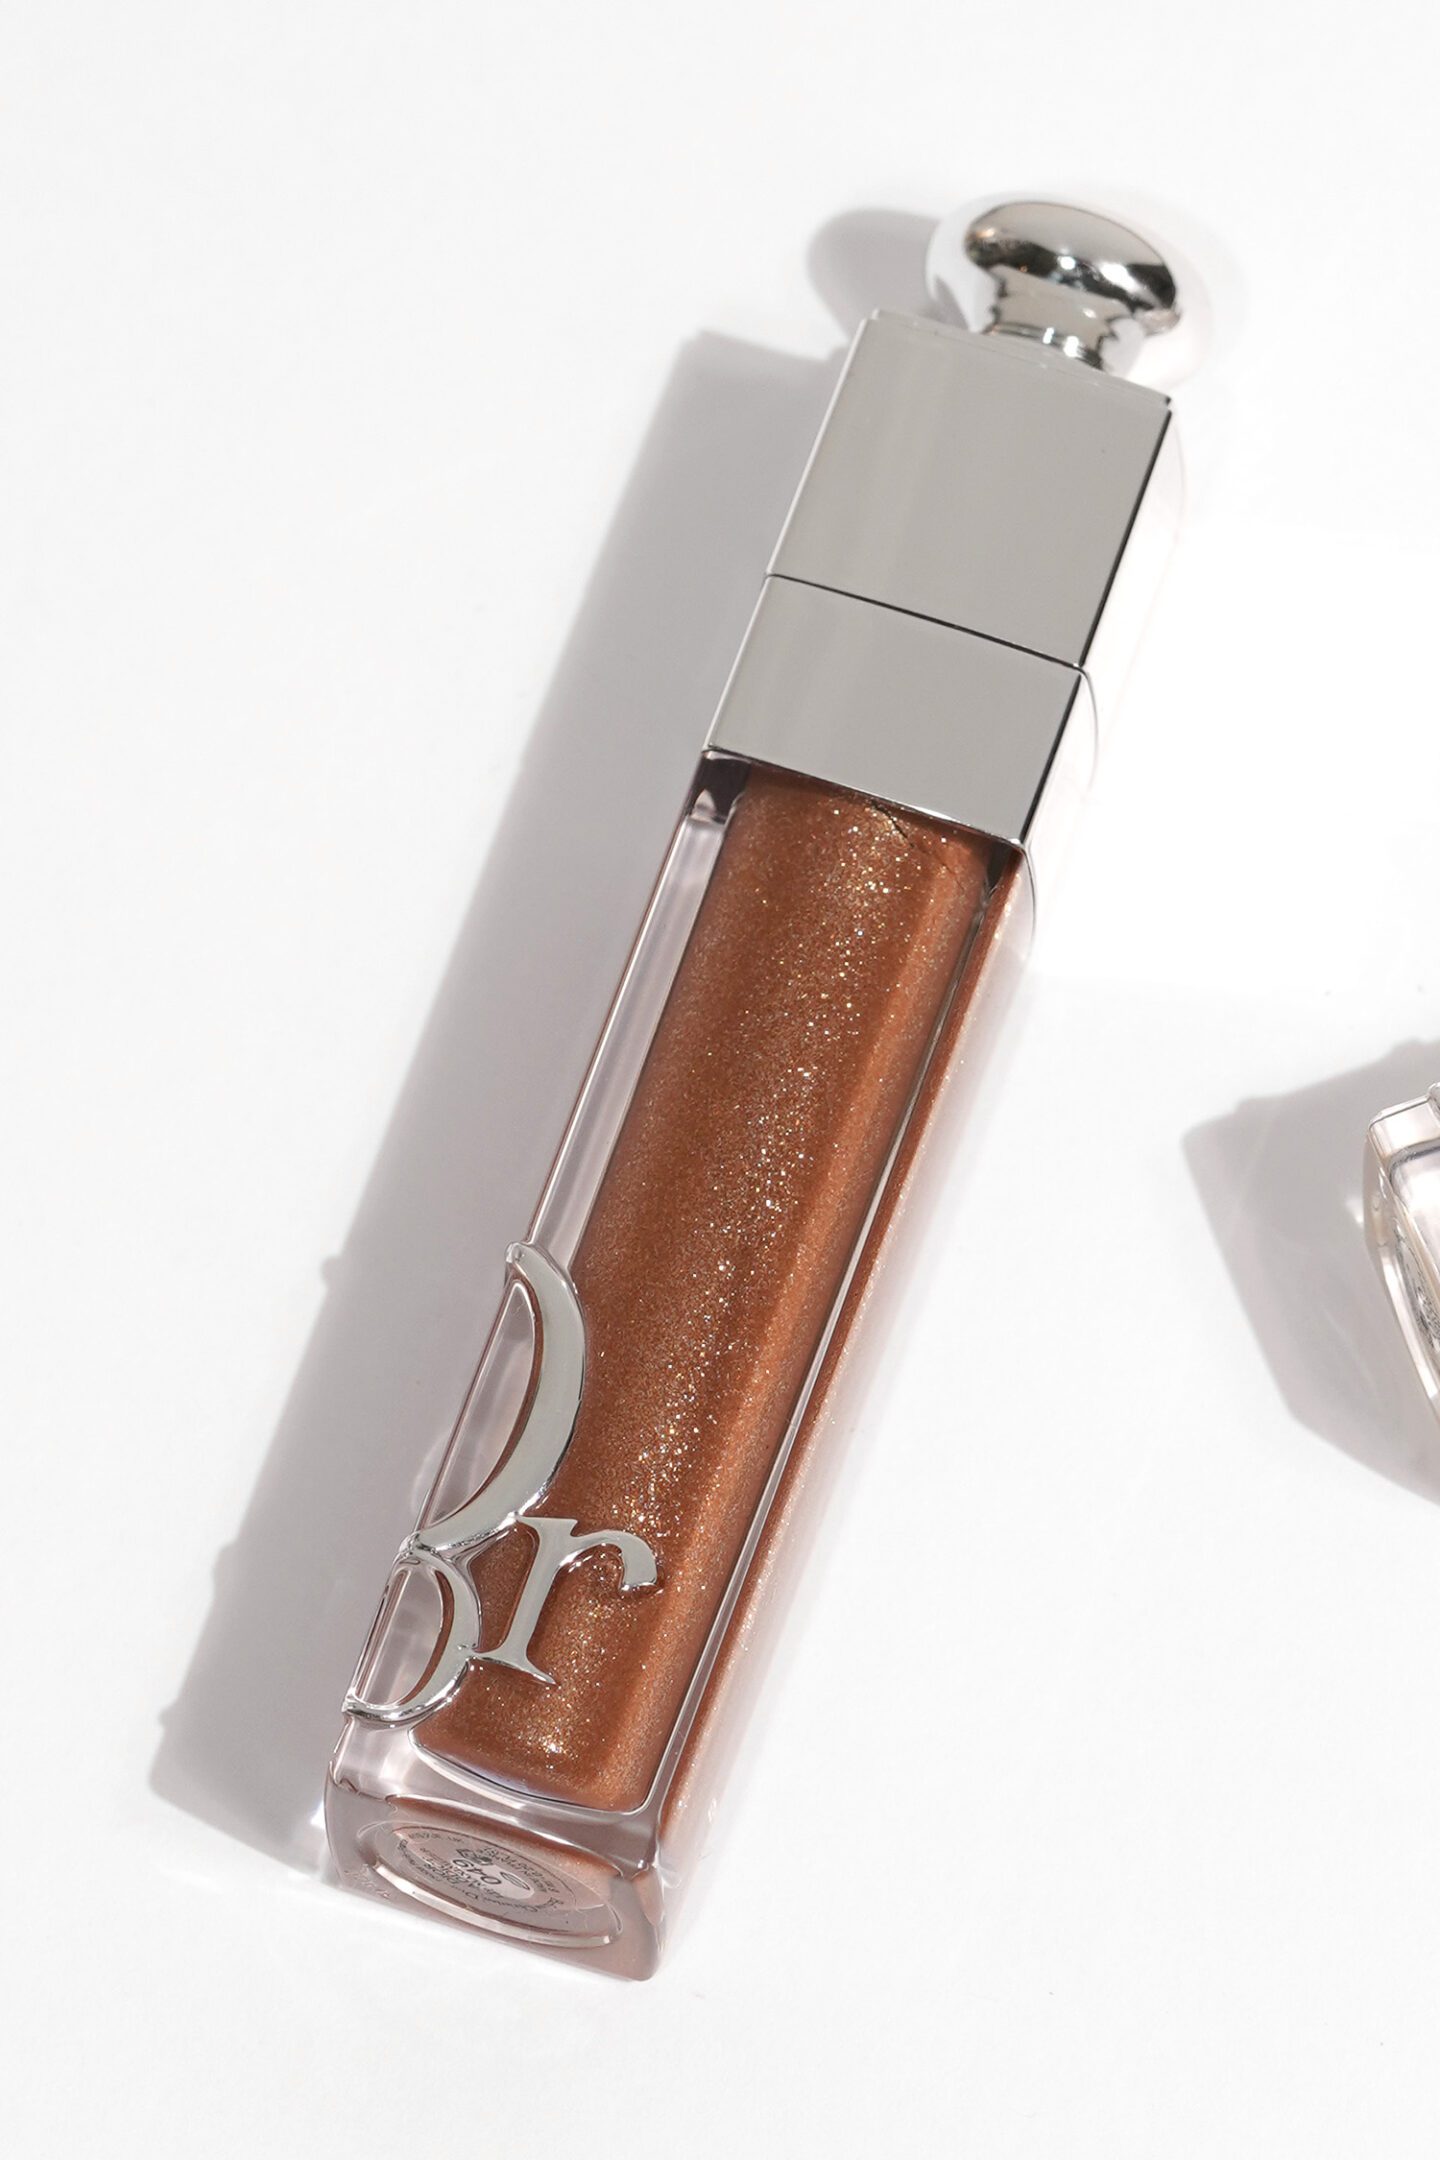 Dior Addict Lip Maximizer Pure Copper